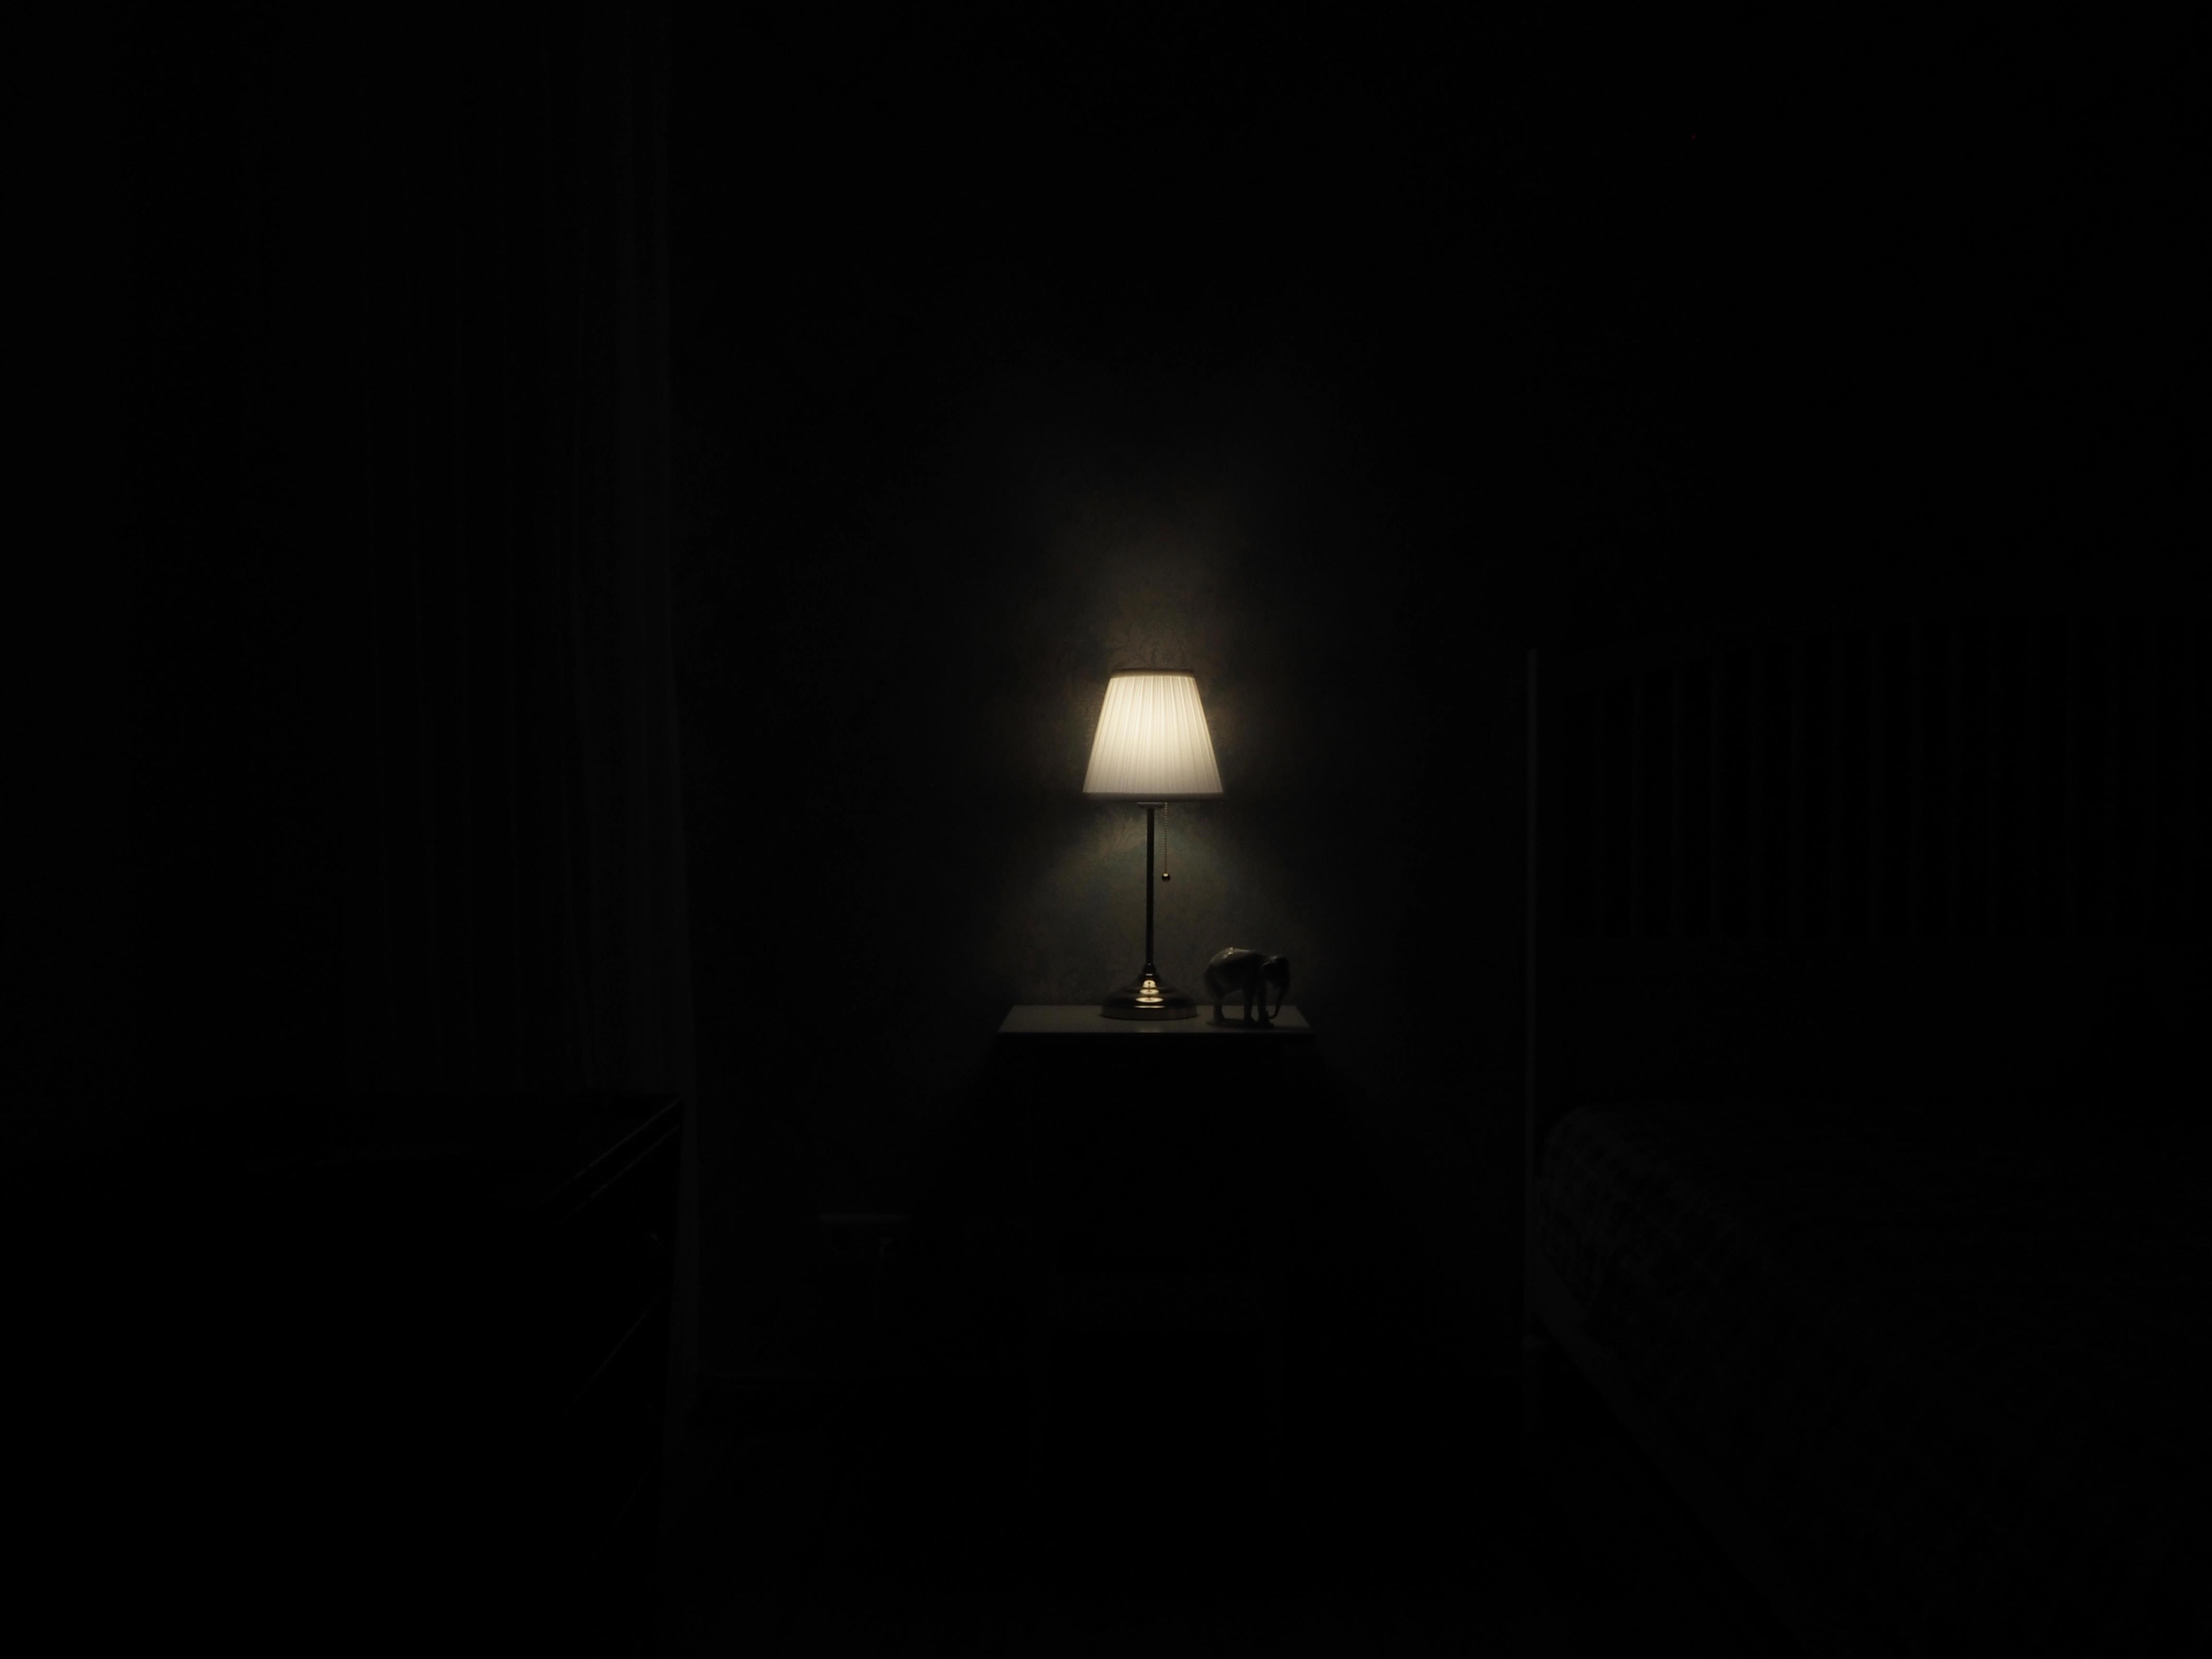 Продолжить темнота. Темное помещение с лампами. Лампа в темноте. Лампочка в темной комнате. Темная комната с лампой.